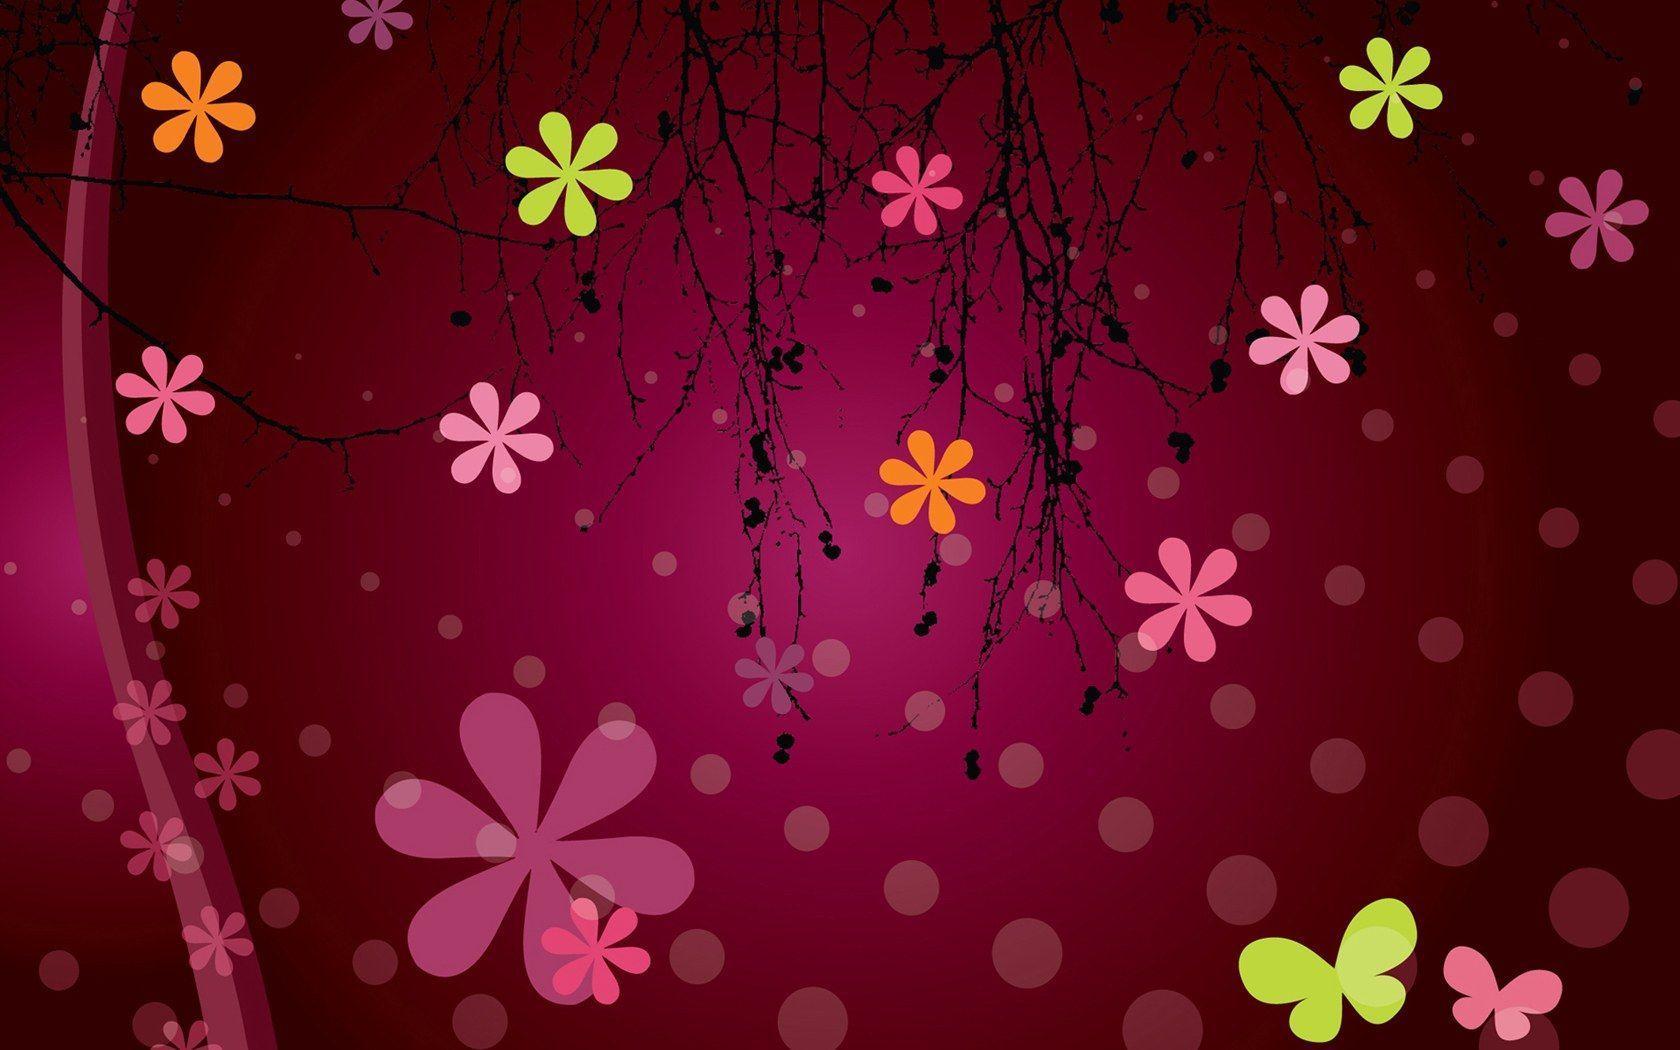 Floral Design, Floral Art, Vector Flower Patterns Background